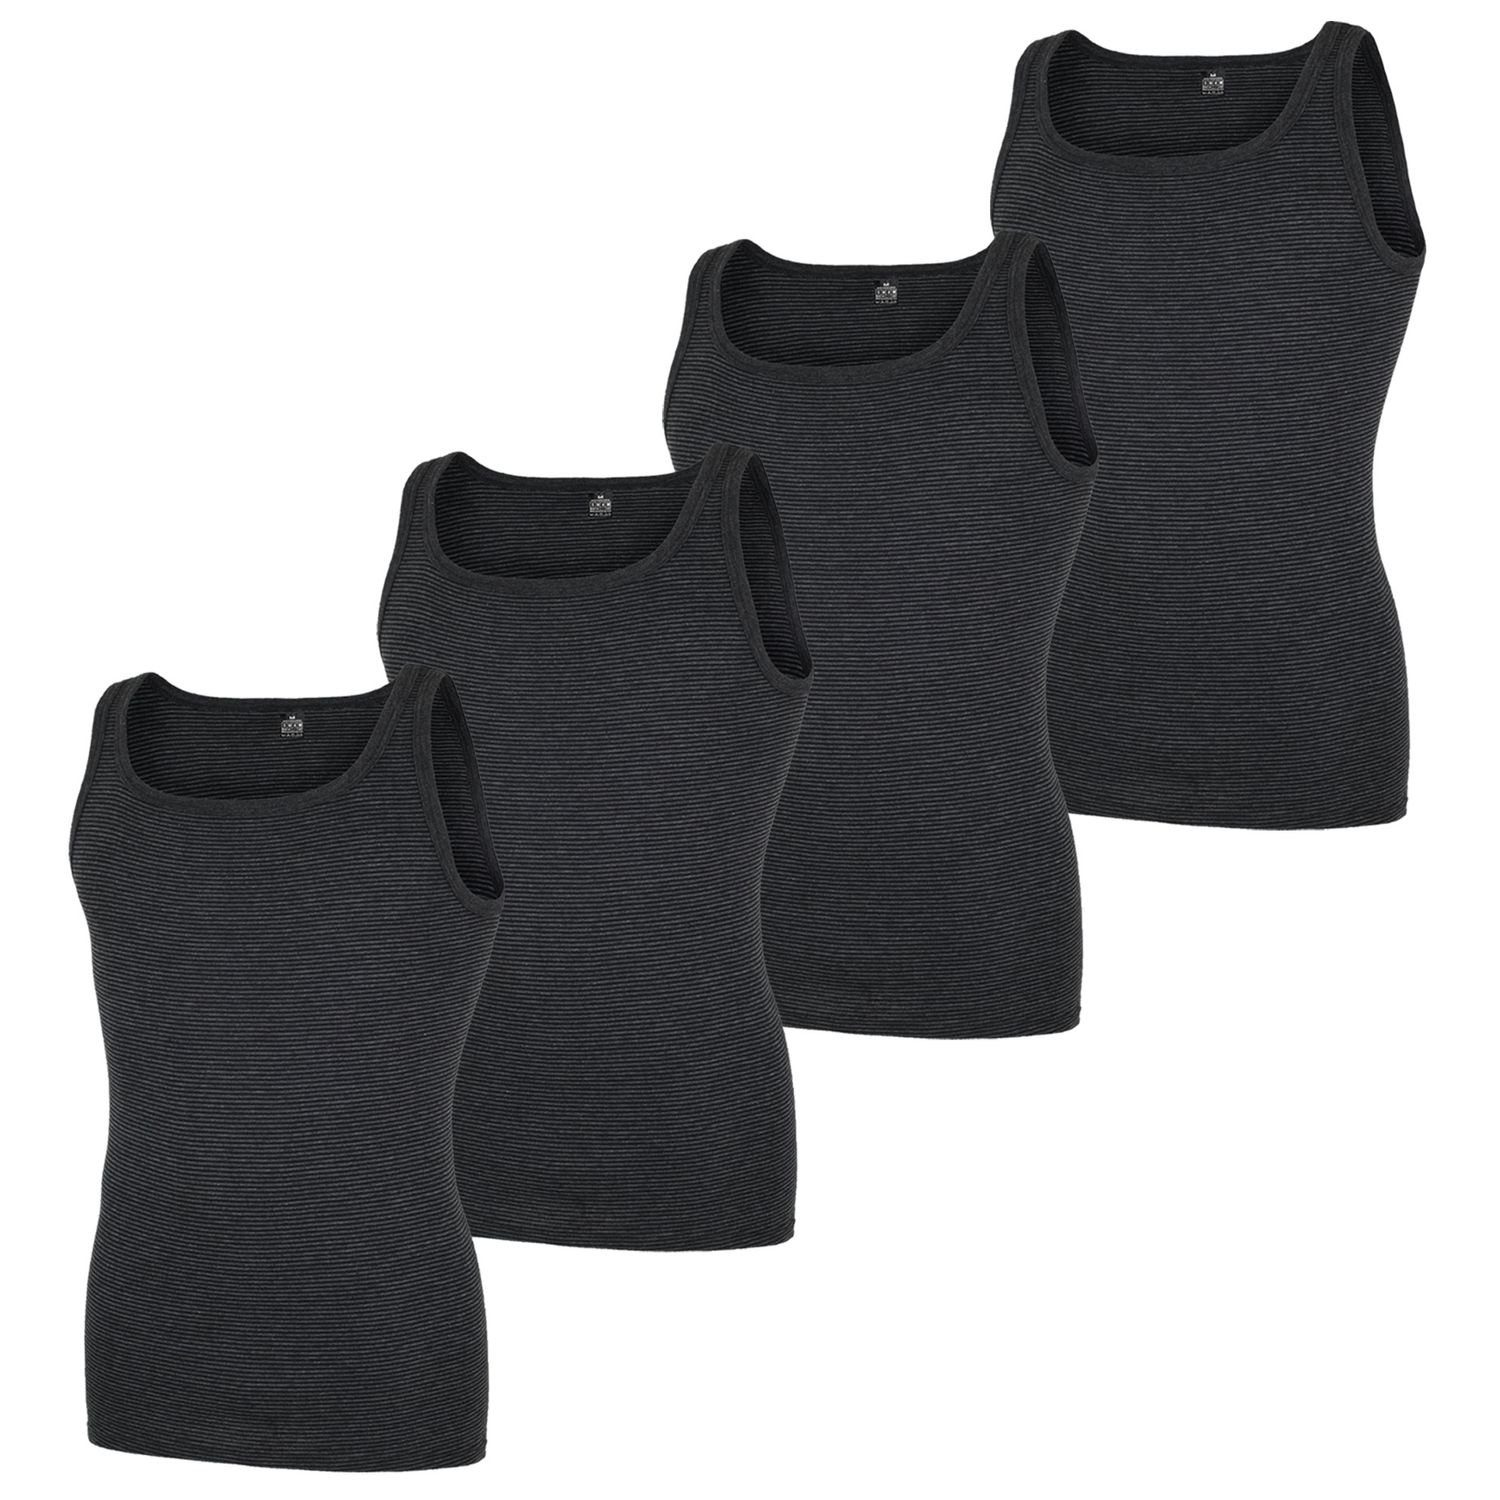 GÖTZBURG Unterhemd (Mehrpack, 4-St., 4 Stück) fein geringeltes Muster, keine Seitennähte, pflegeleicht (4er Pack) Anthrazit | Unterhemden